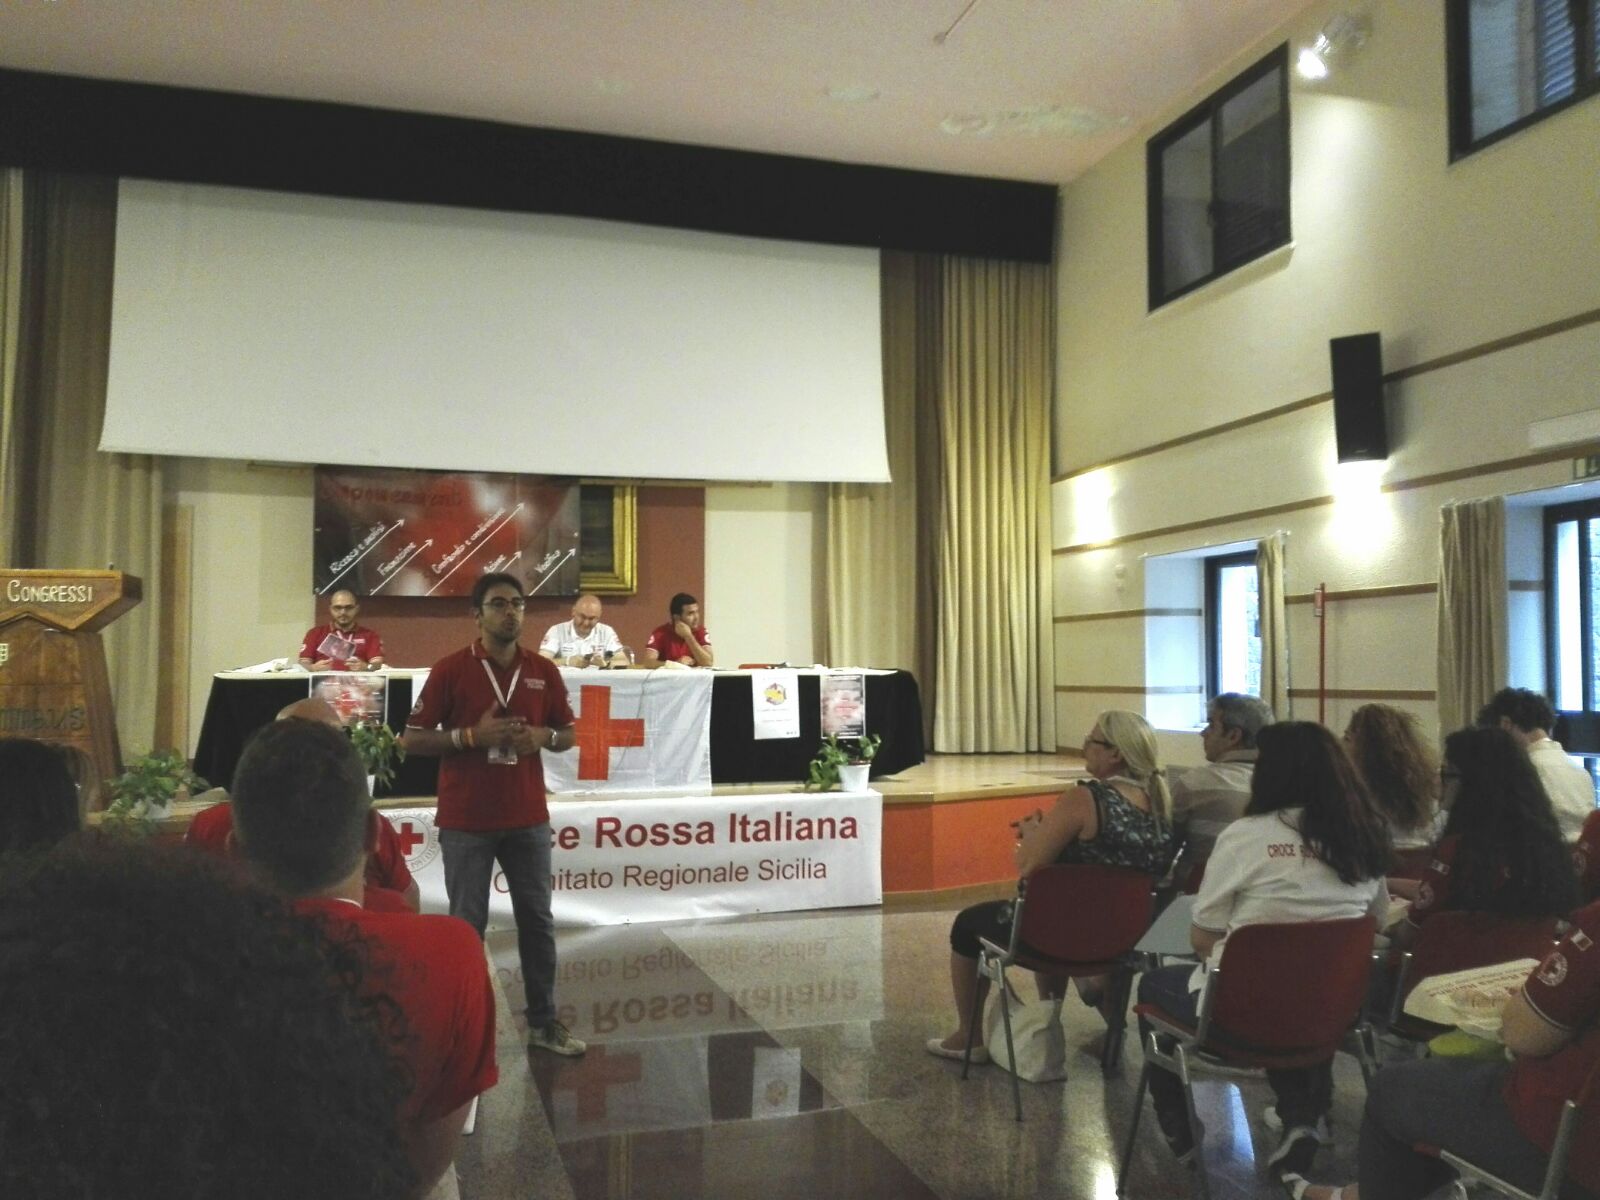 Assemblea plenaria: Rappresentante nazionale dei Giovani di Croce Rossa, Gabriele Bellocchi